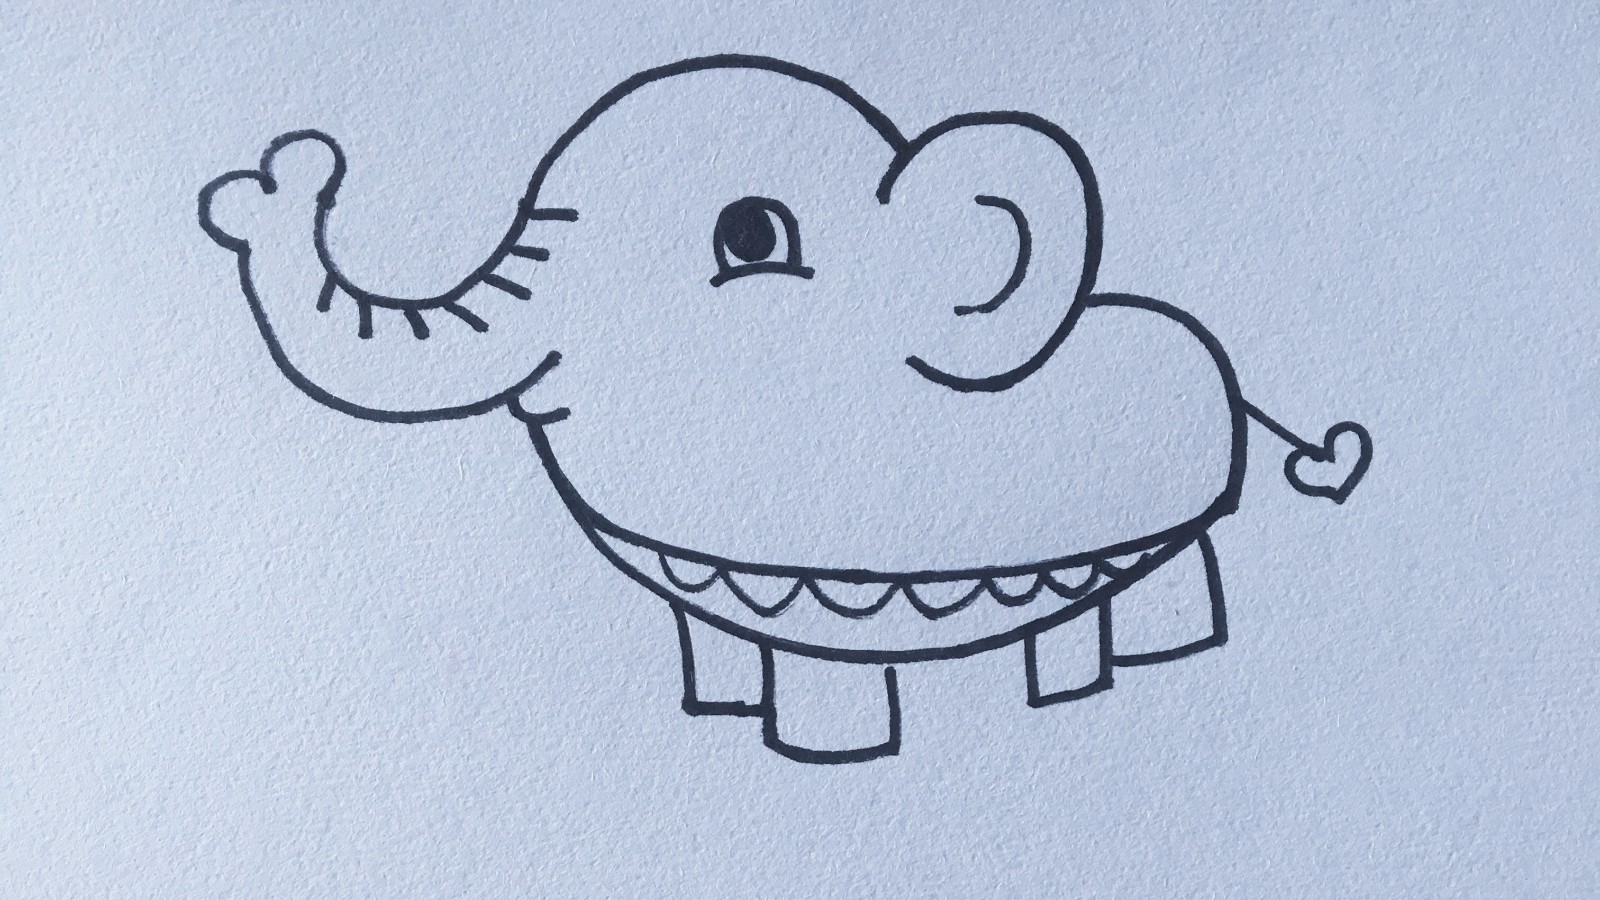 可爱的大象的简笔画画法图片教程💛巧艺网